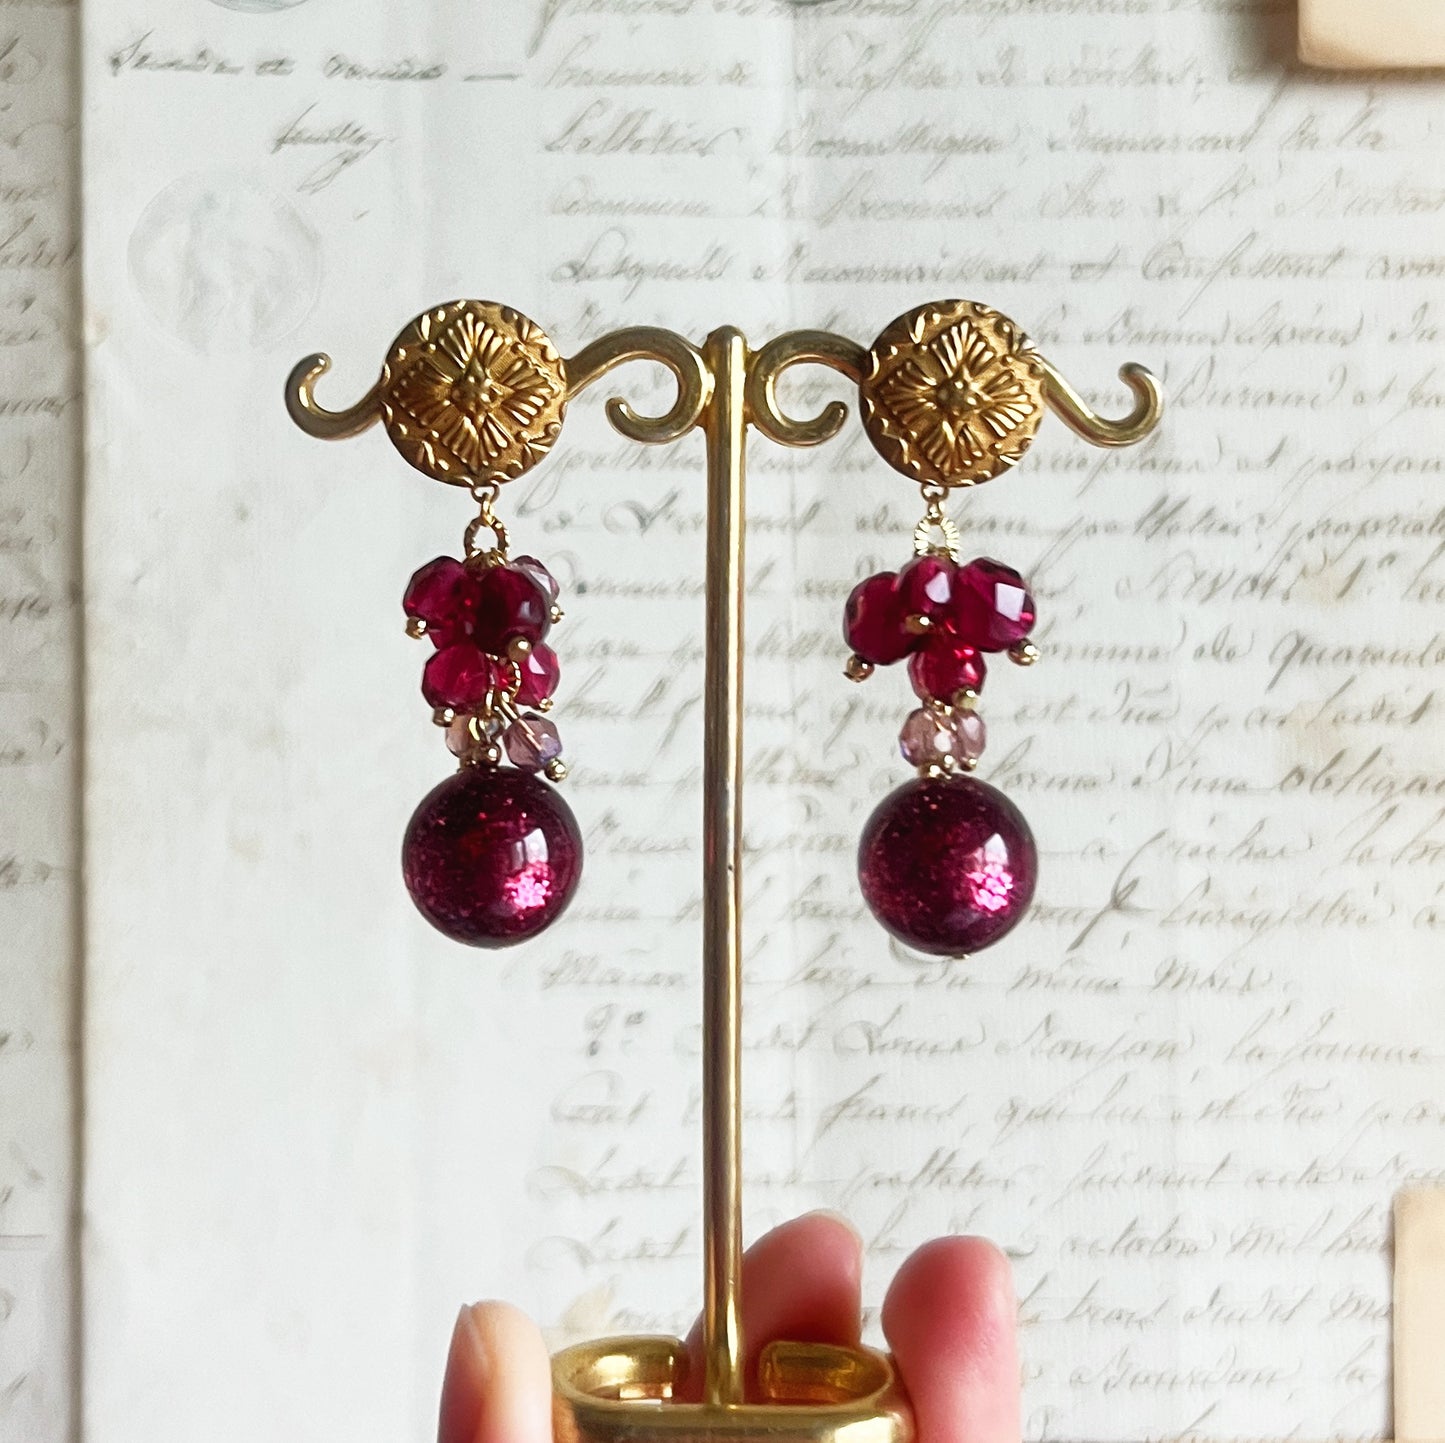 Framboise earrings